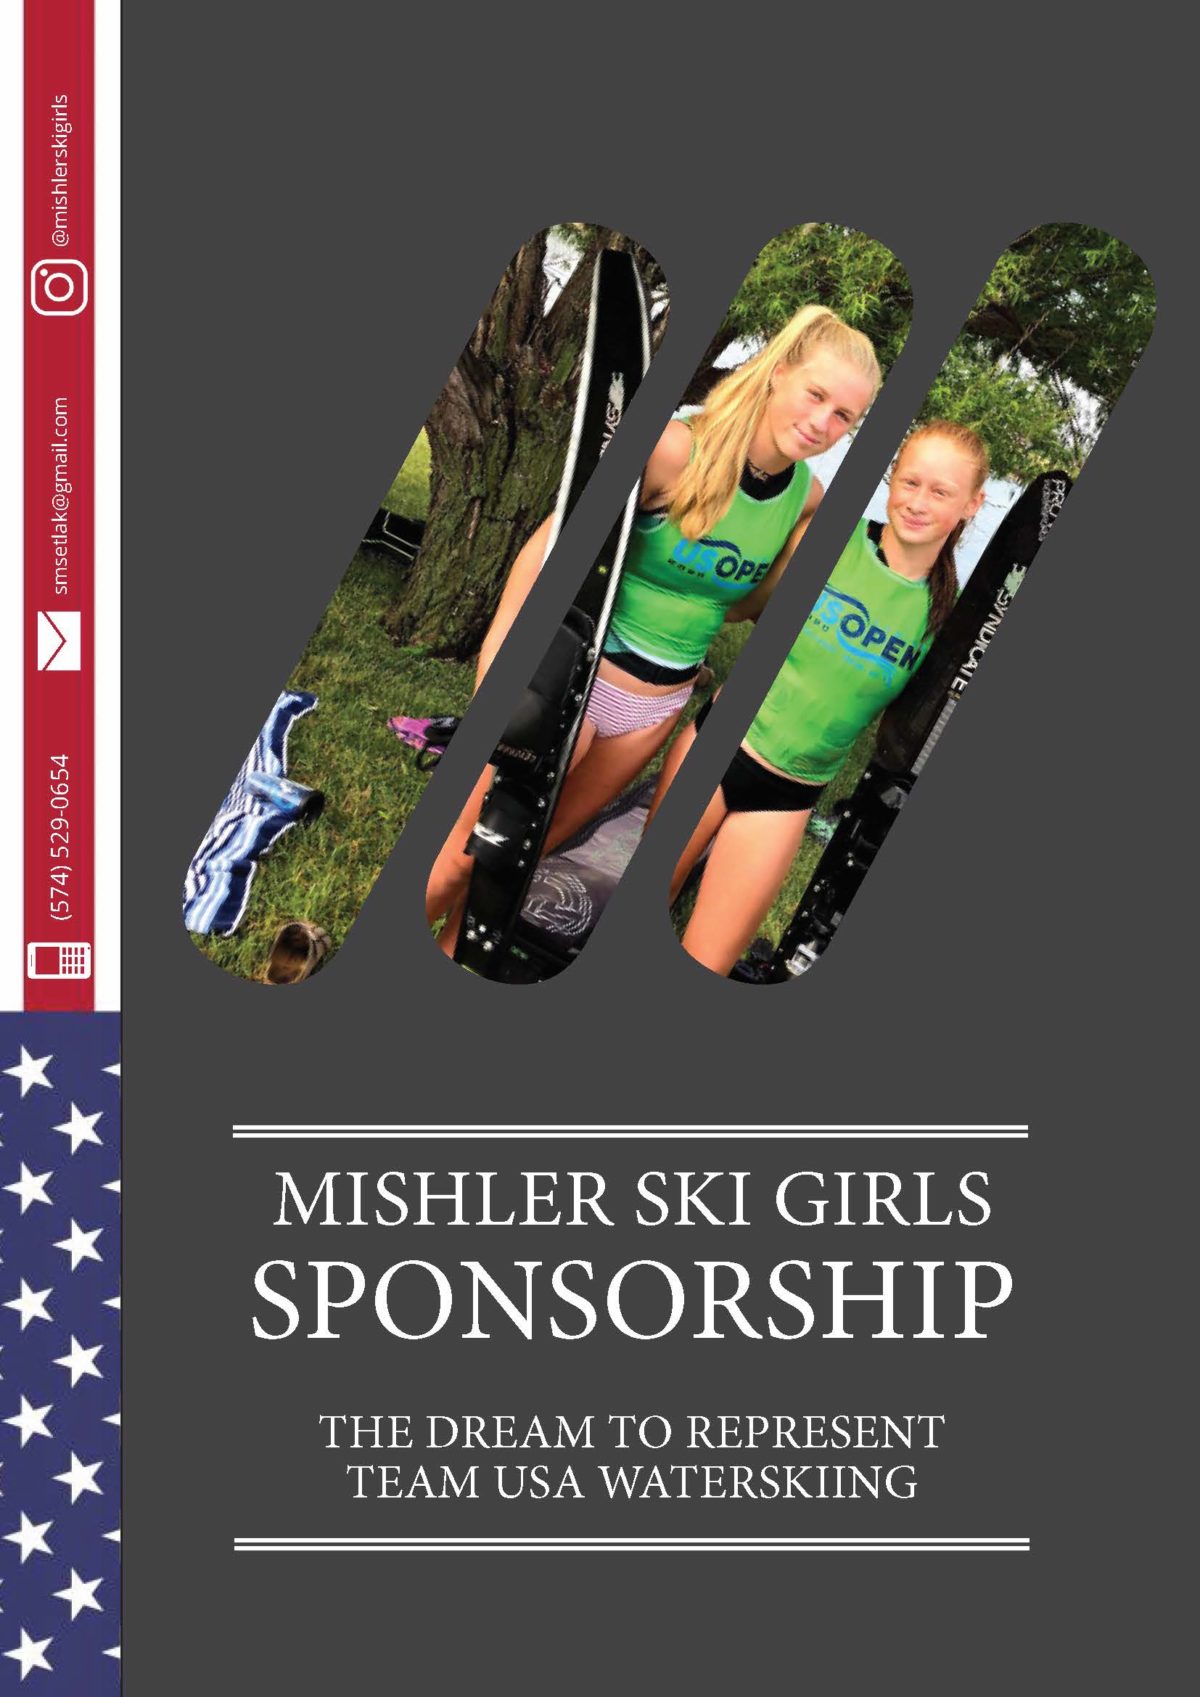 Tacktical Marketing | Mishler Ski Girls Sponsorship1